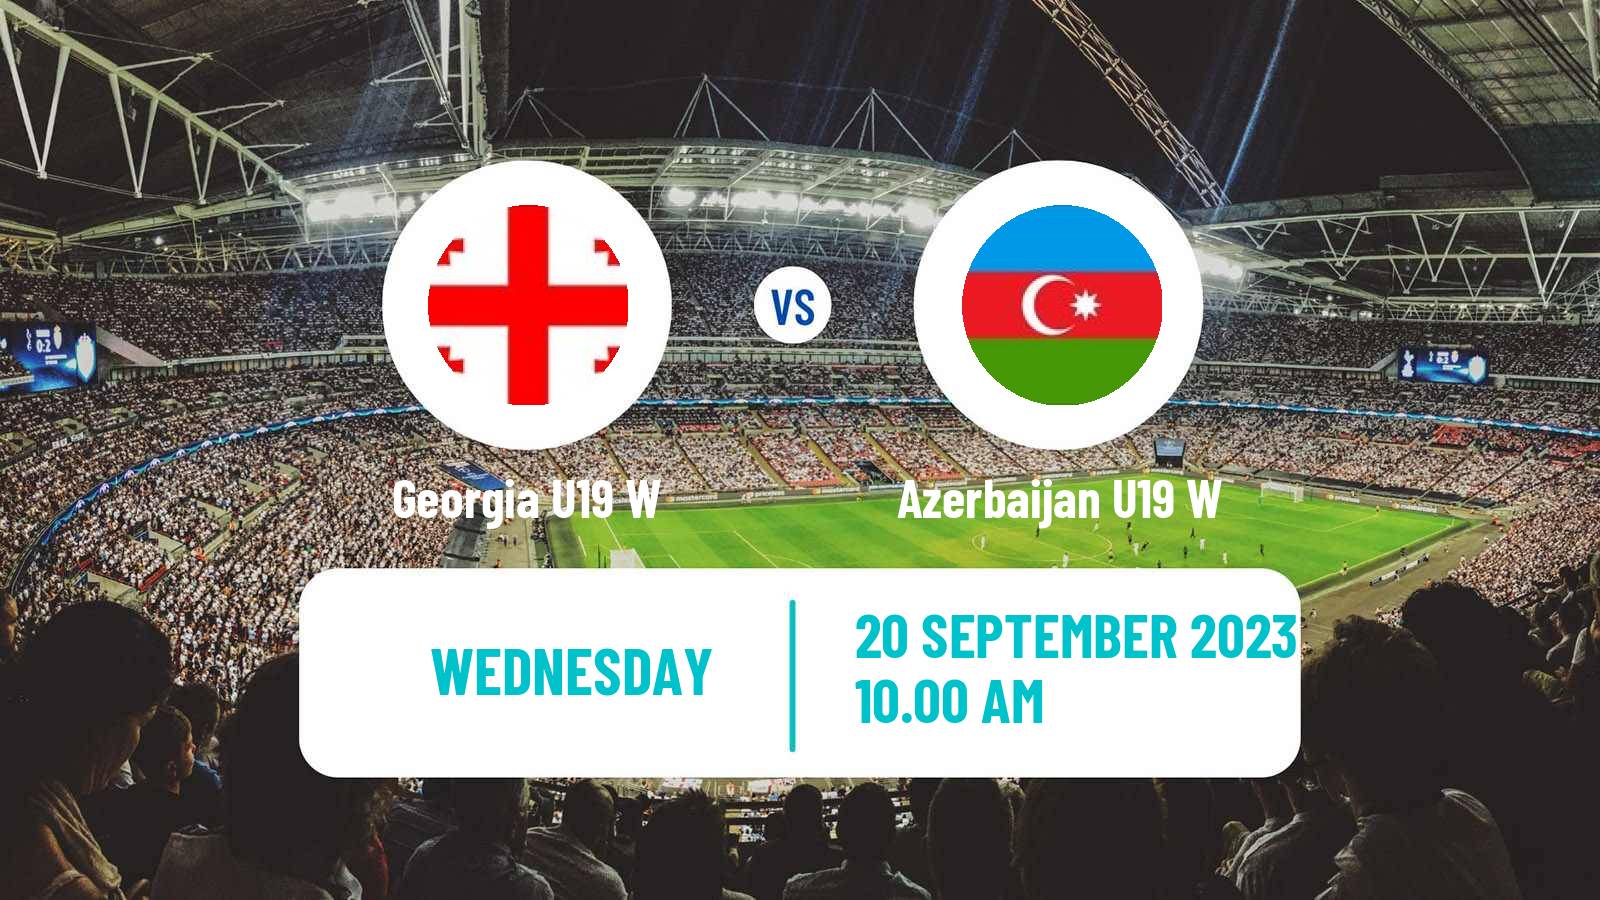 Soccer Friendly International Women Georgia U19 W - Azerbaijan U19 W